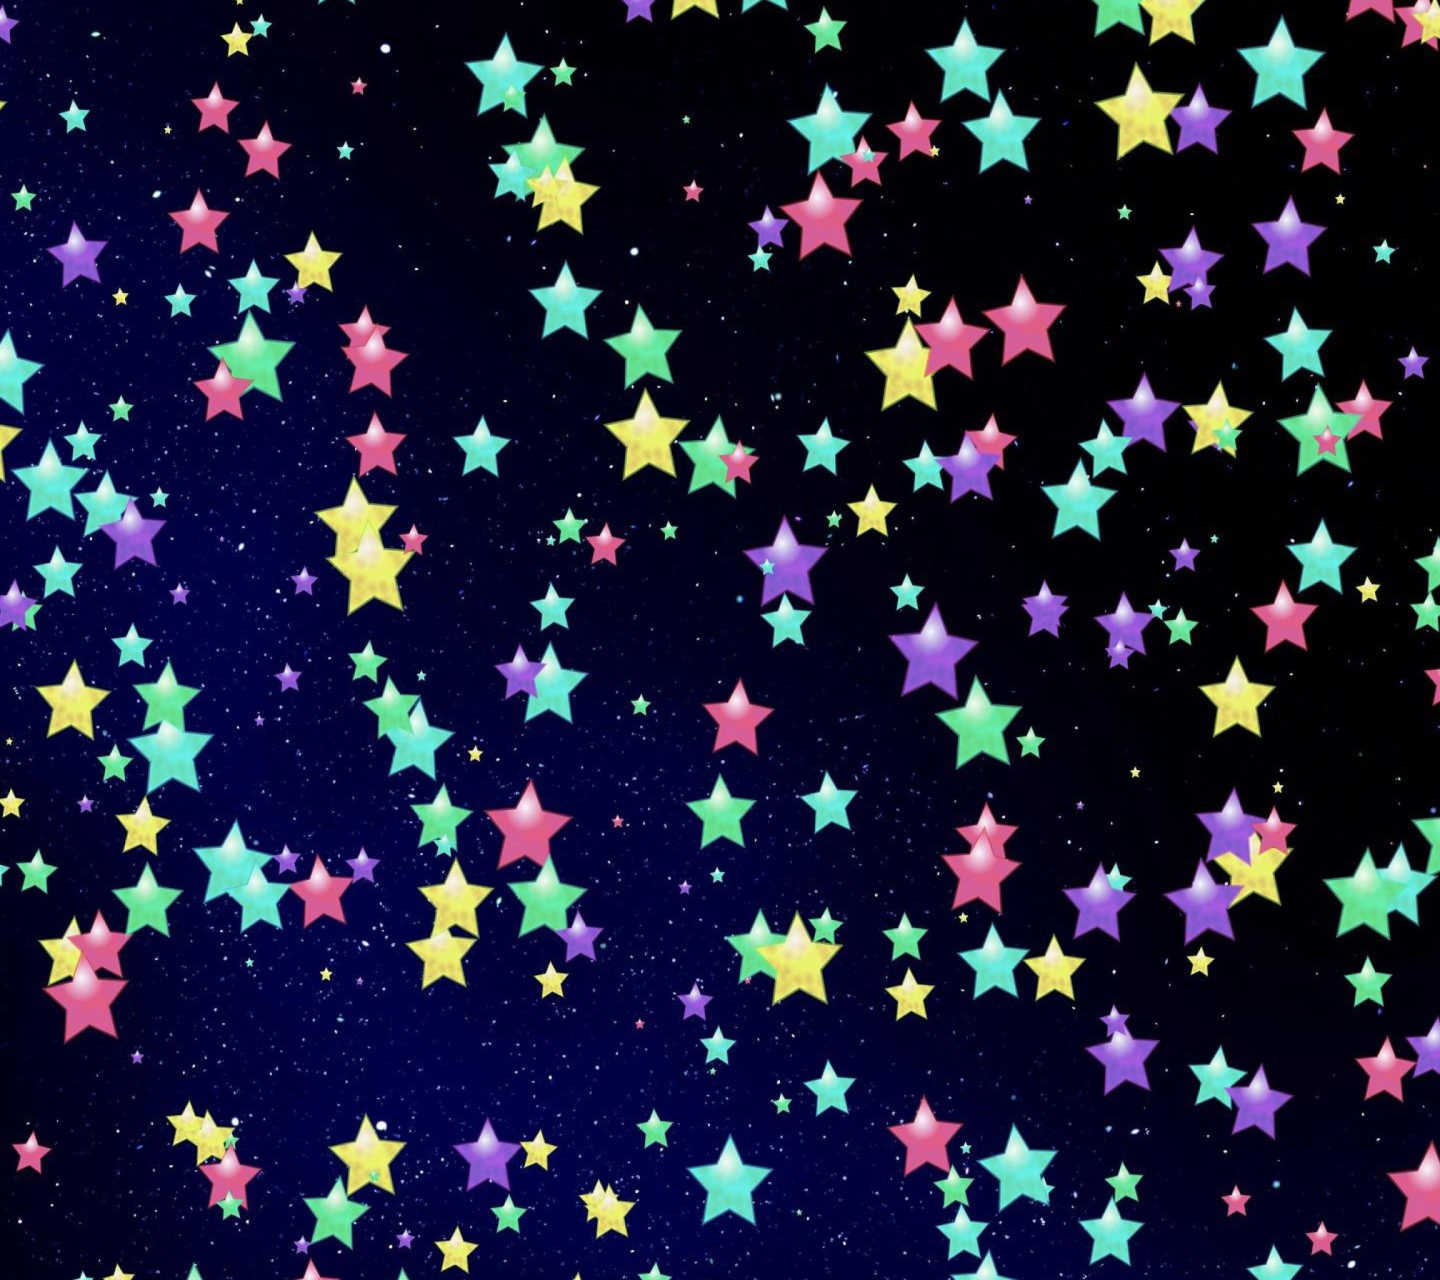 Das Colorful Stars Wallpaper 1440x1280